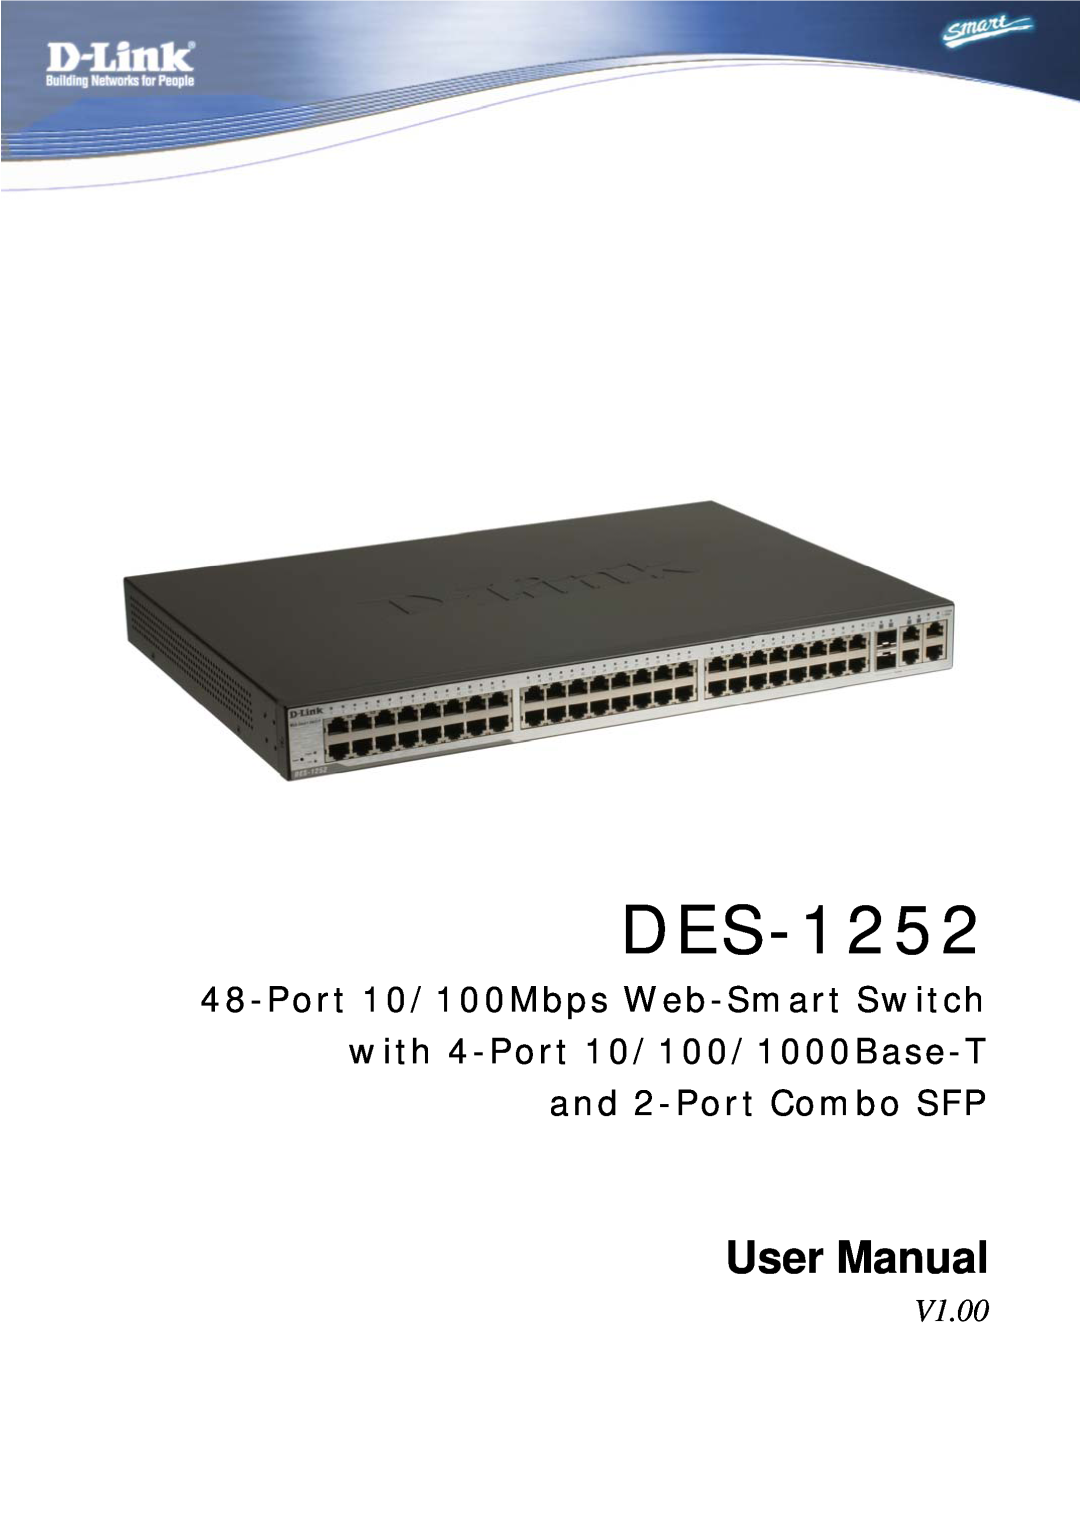 D-Link DES-1252 user manual V1.00, User Manual 